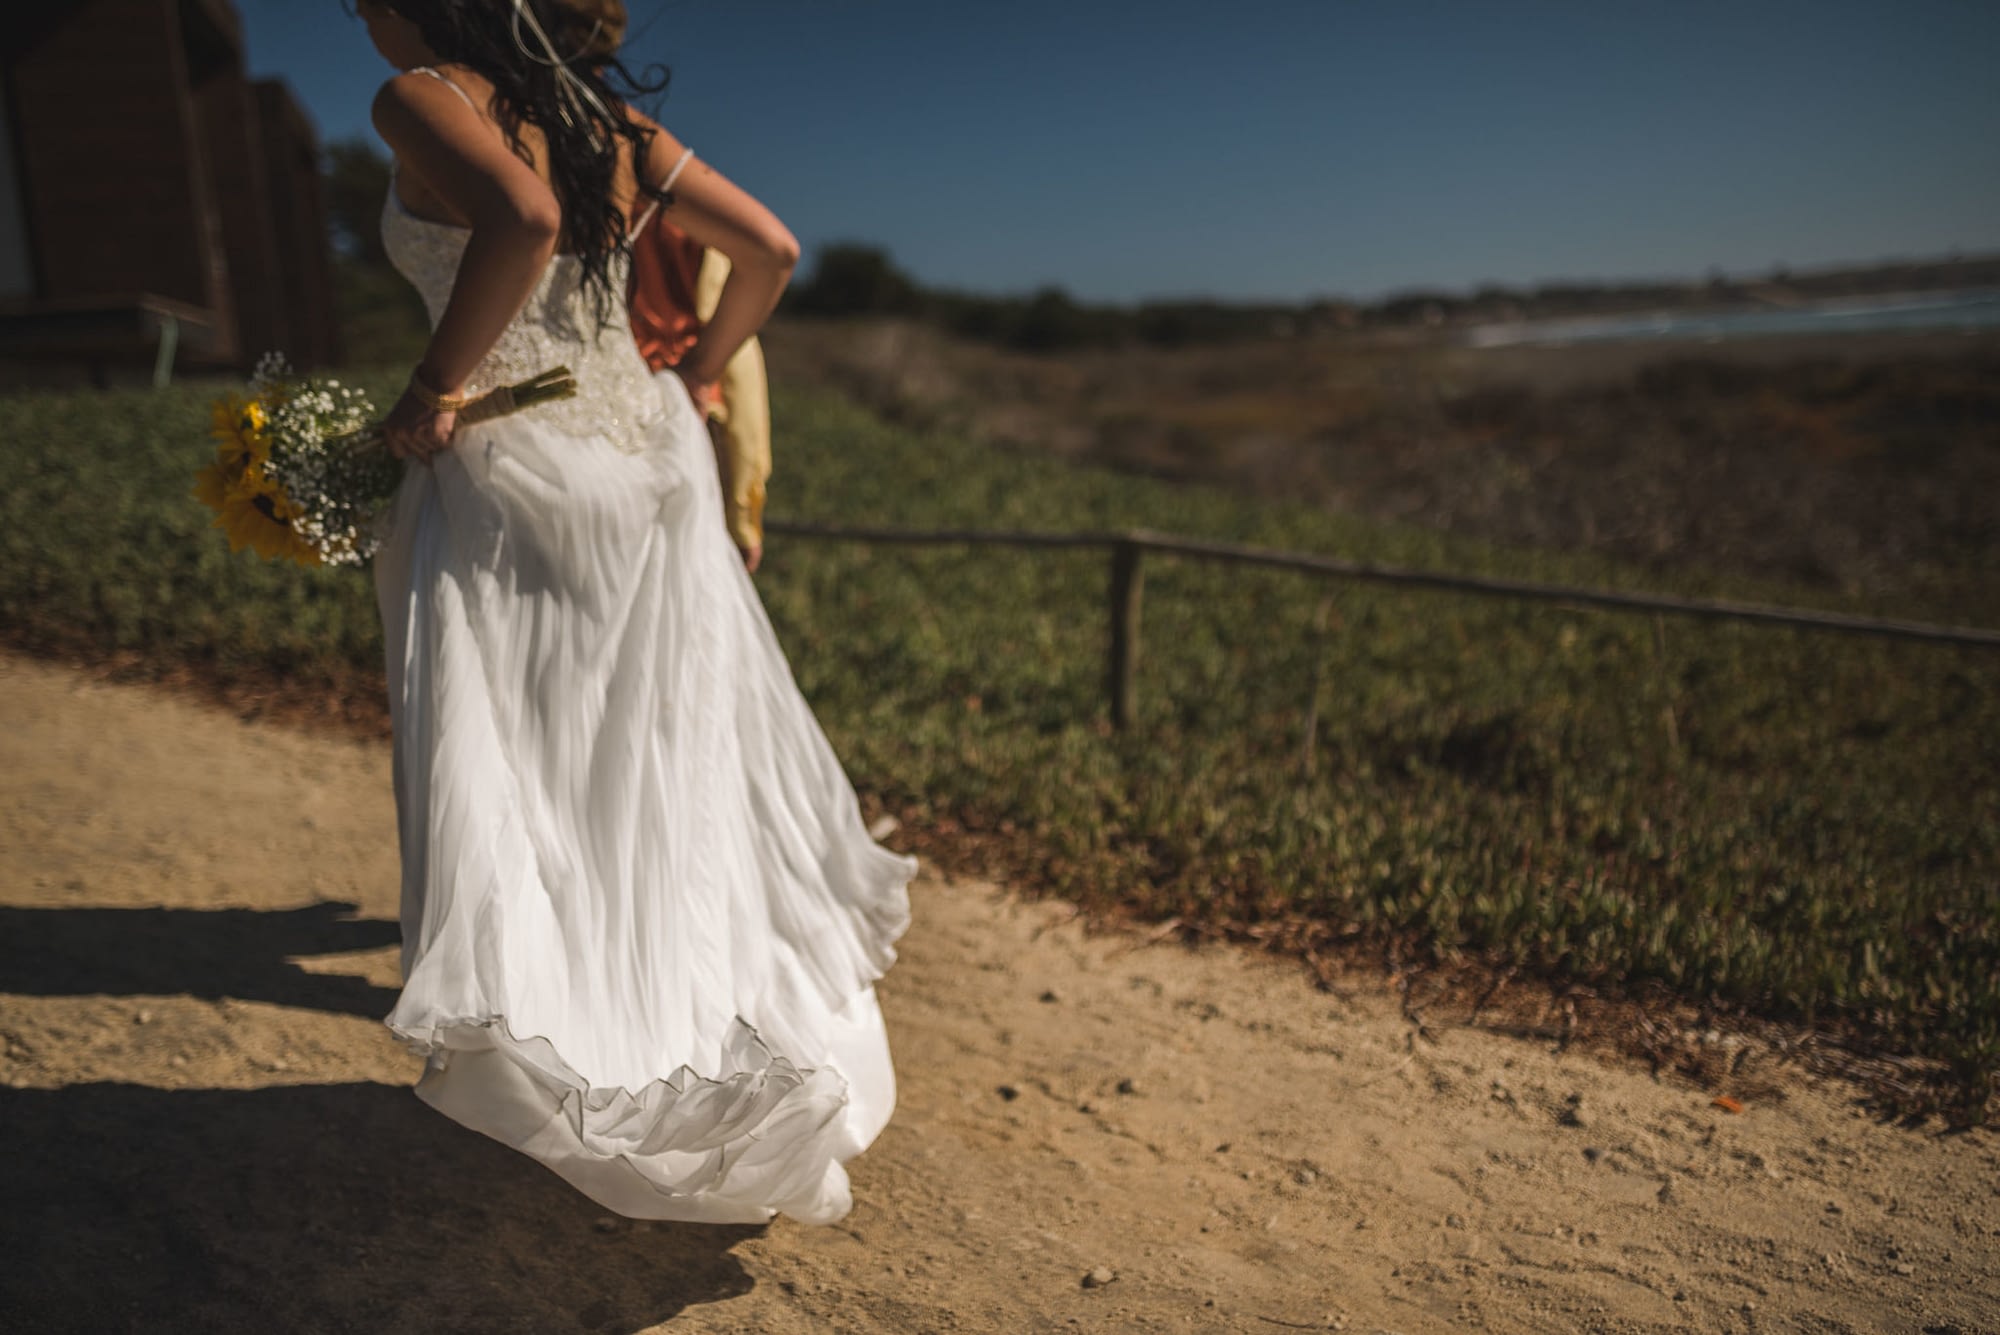 matrimonio-playa-pichilemu-boda-playa lobos pacific house-fotografo profesional matrimonio